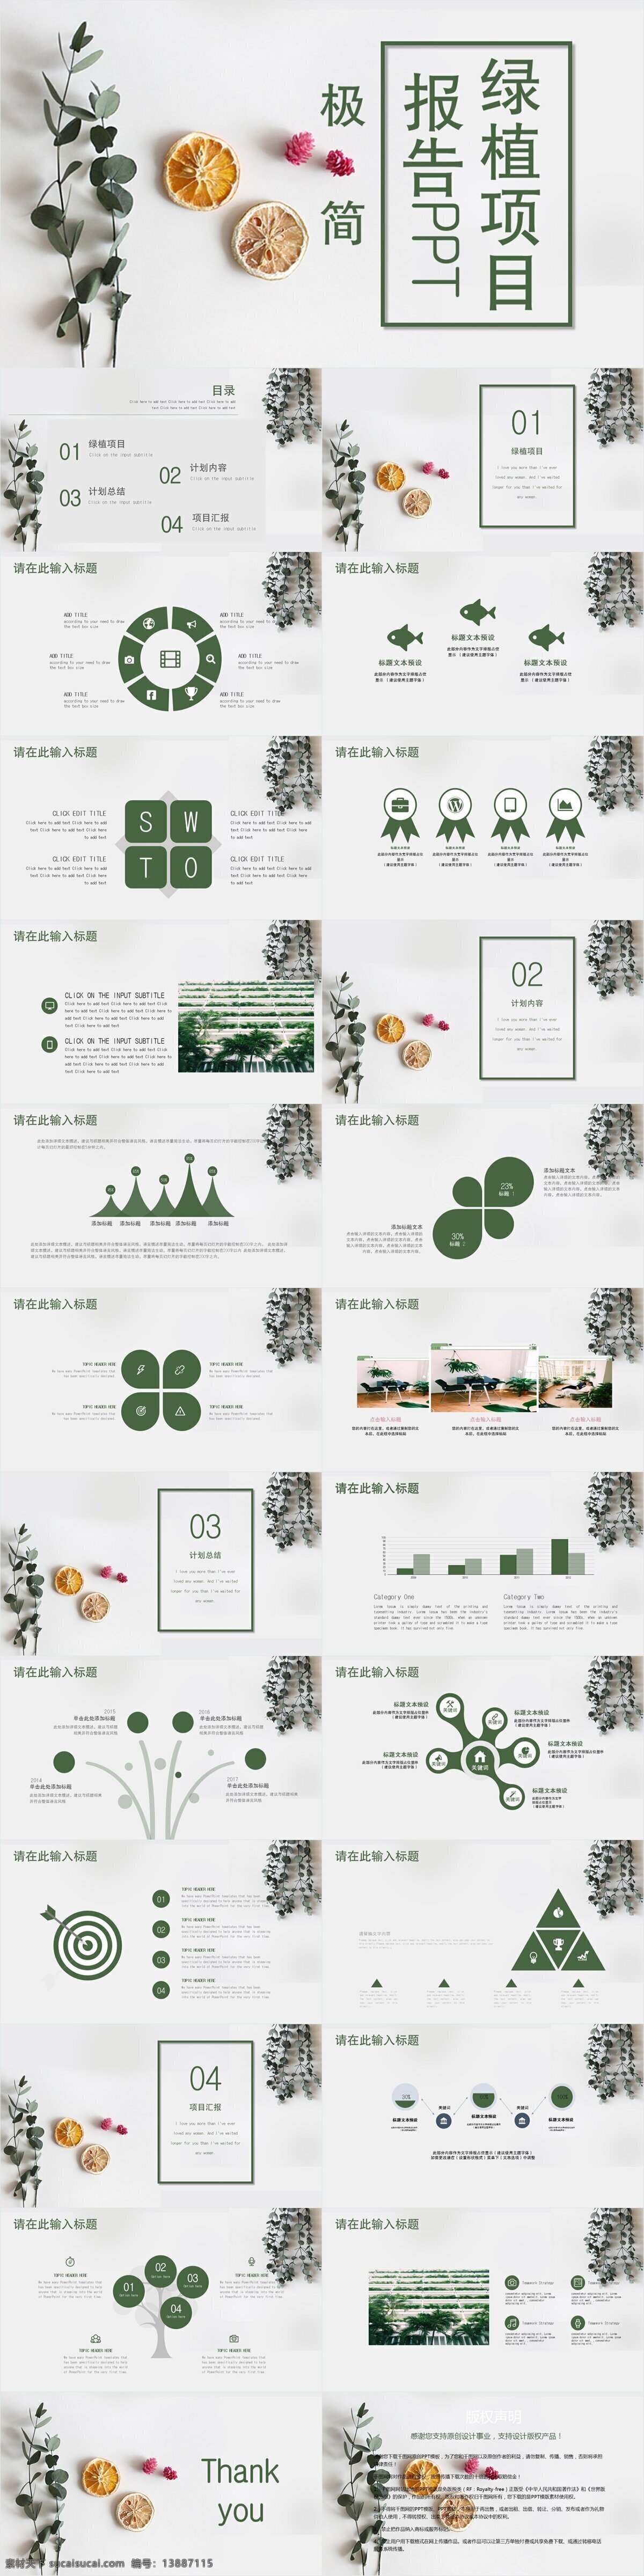 极 简 绿植 项目 报告 模板 创意 工作汇报 策划 通用 绿植项目 报告ppt 商业计划书 年终总结 项目部